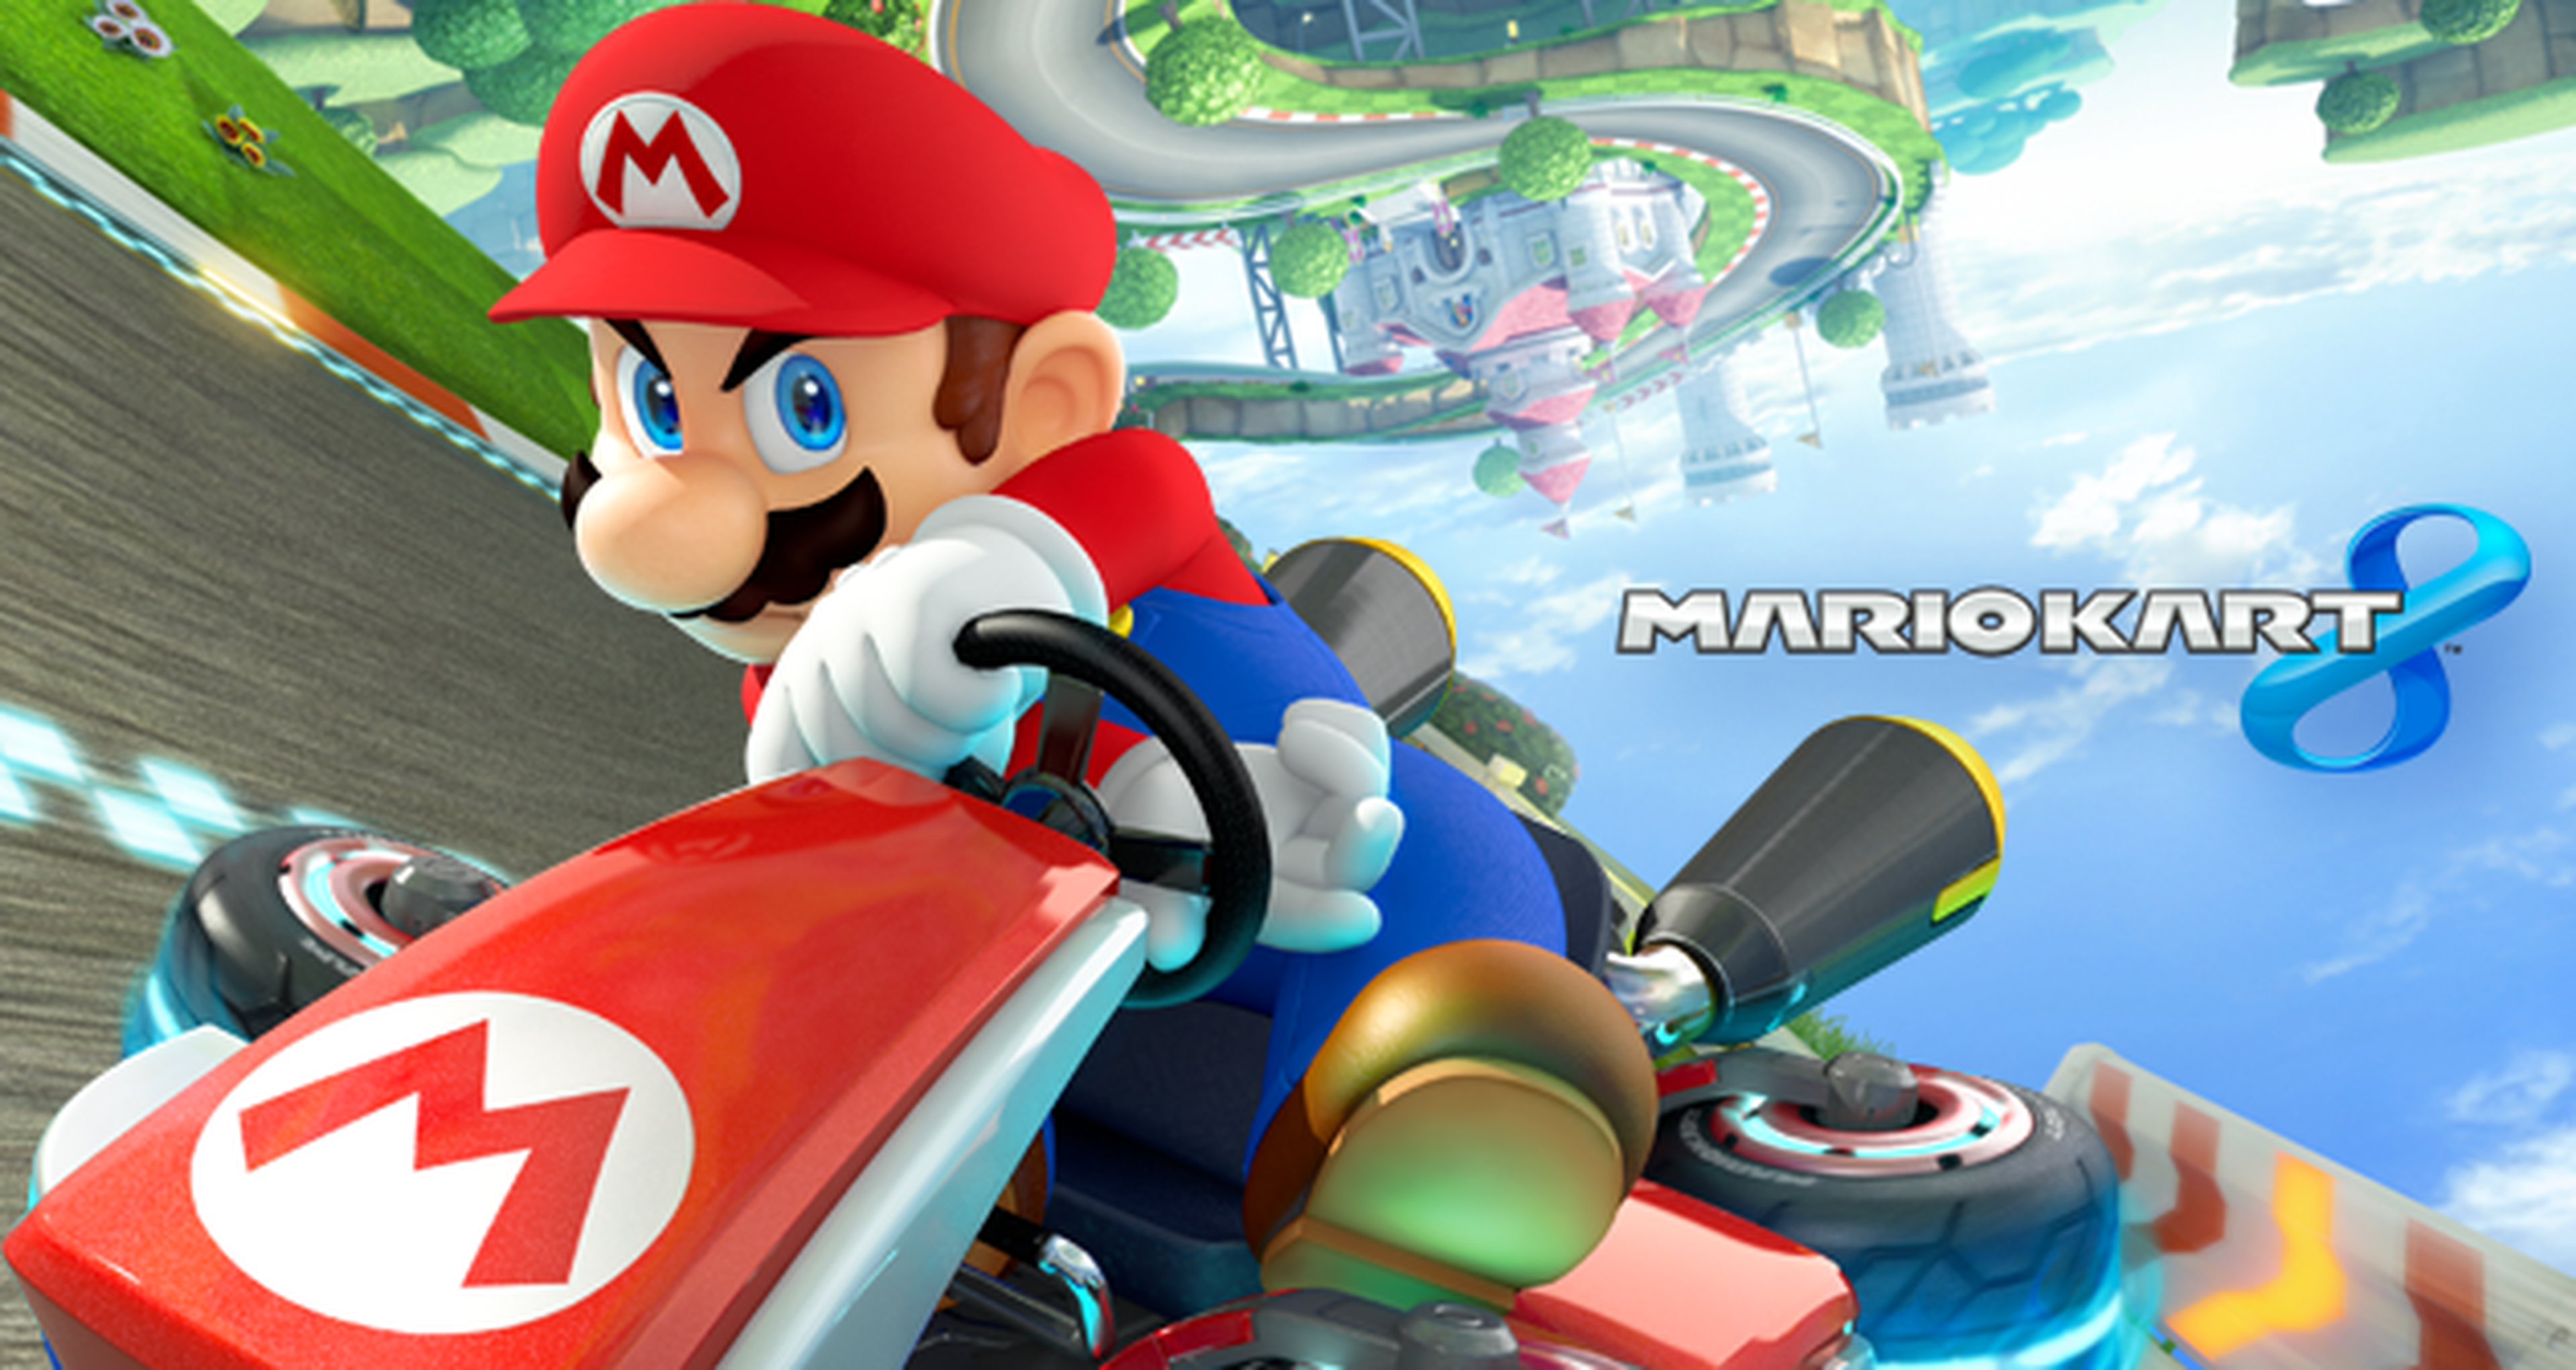 Torneo Mario Kart 8 a 200cc: Resultados definitivos. ¡Hoy es la final!